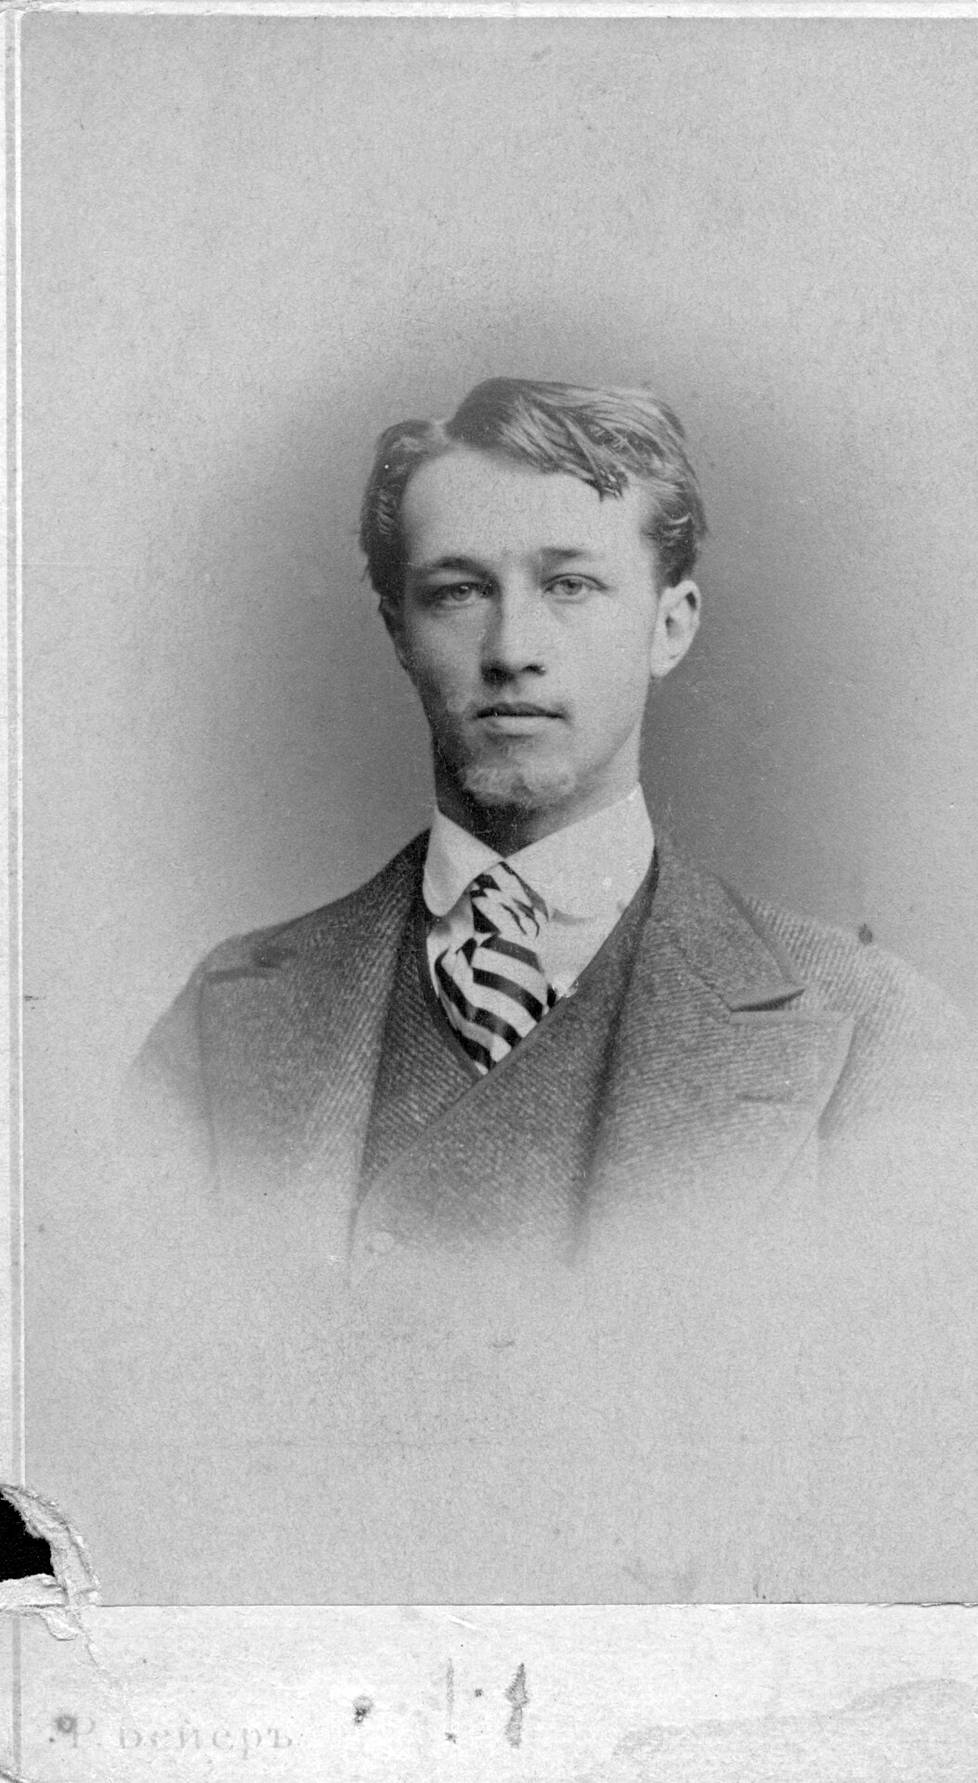 Carl von Nottbeck oli Finlaysonin tehtaan omistavan Wilhelm von Nottbeckin vanhin poika. Hän kauppasi aluksi Pietarissa Edisonin puhelimia, mutta innostui sitten Edisonin sähkövalaistusjärjestelmästä. Kuvaaja: R. Beyer.